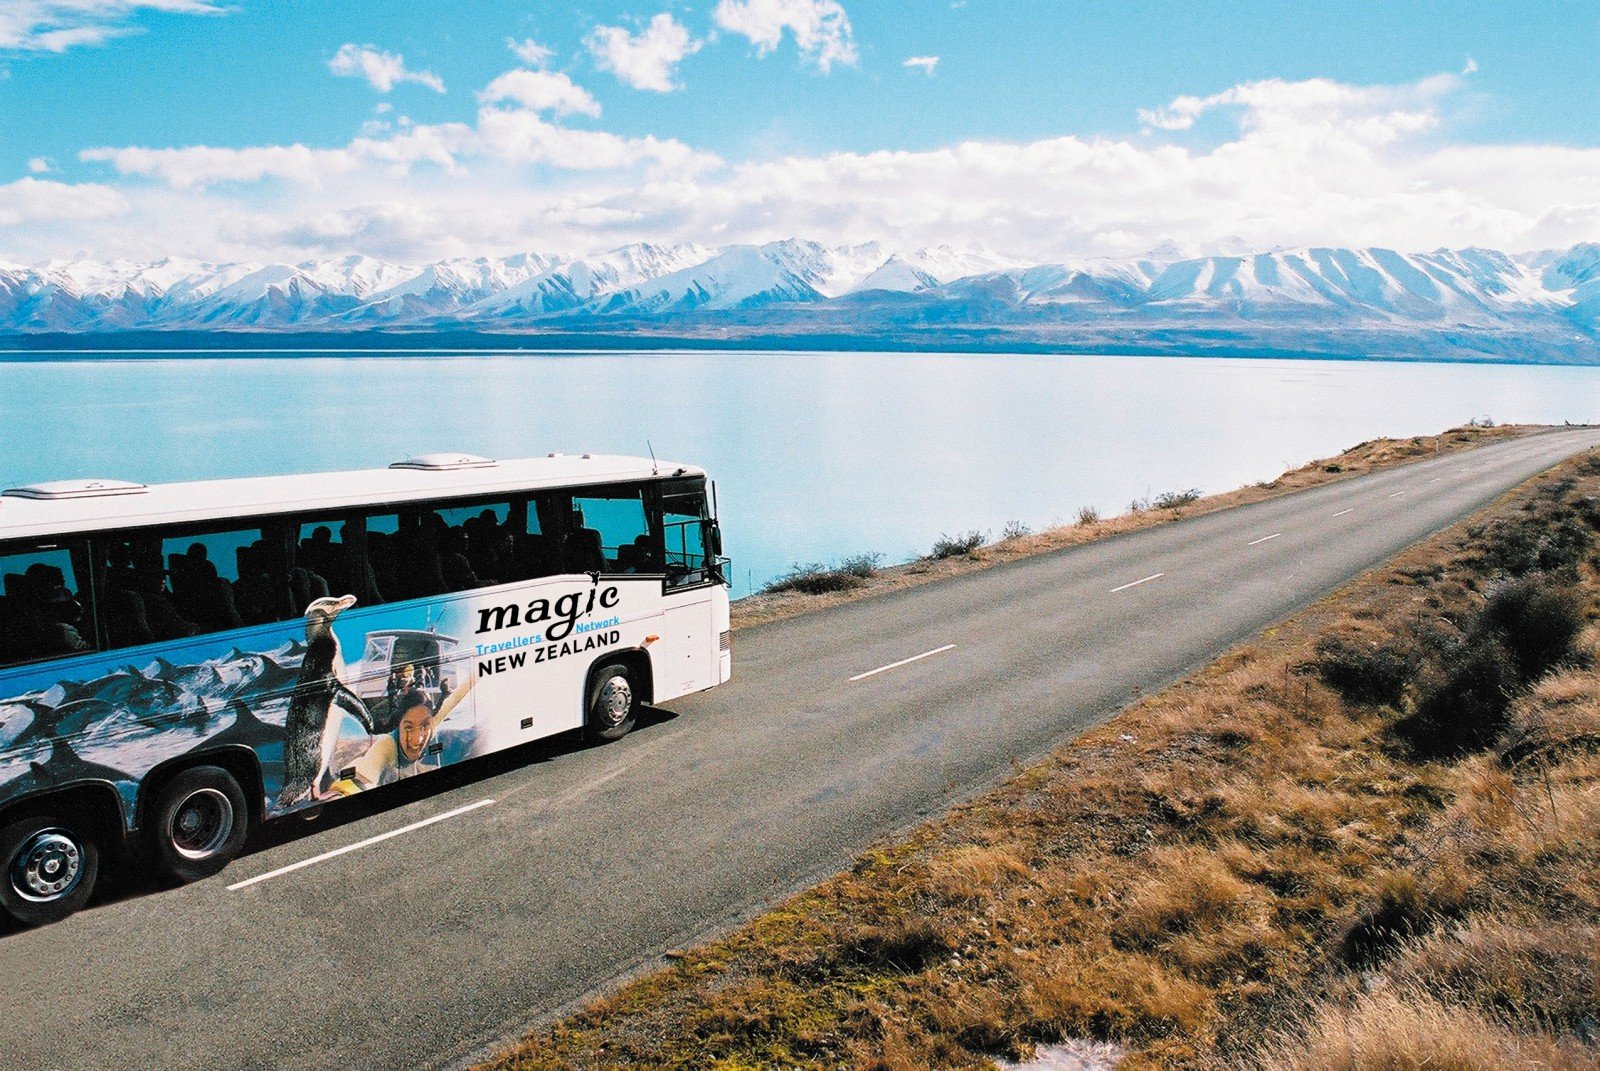 Турист автобусные туры